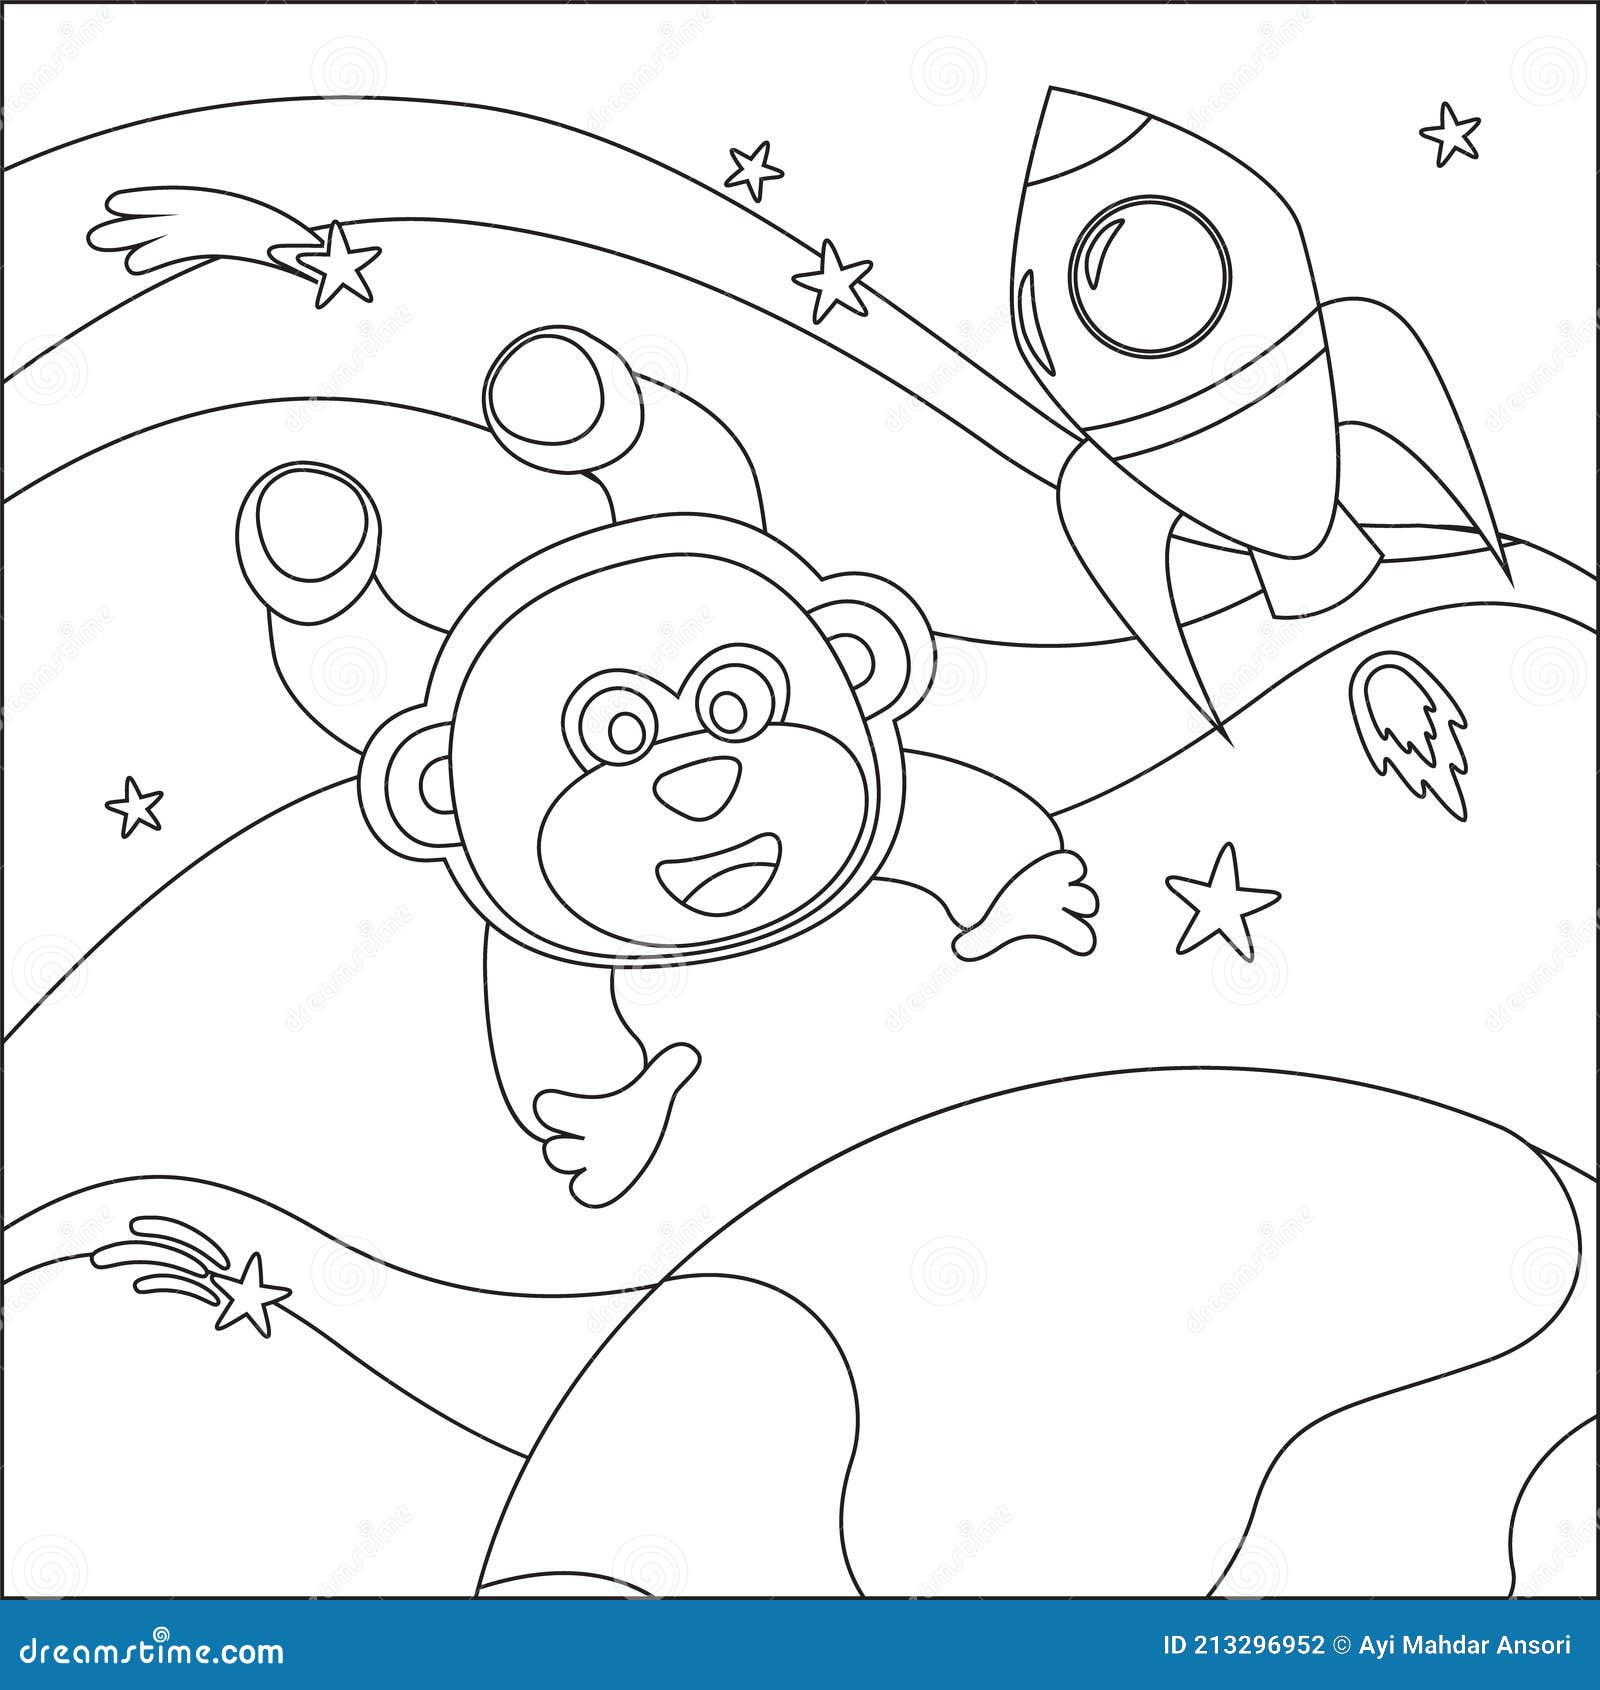 Arquivos desenho macaco - Atividades para a Educação Infantil